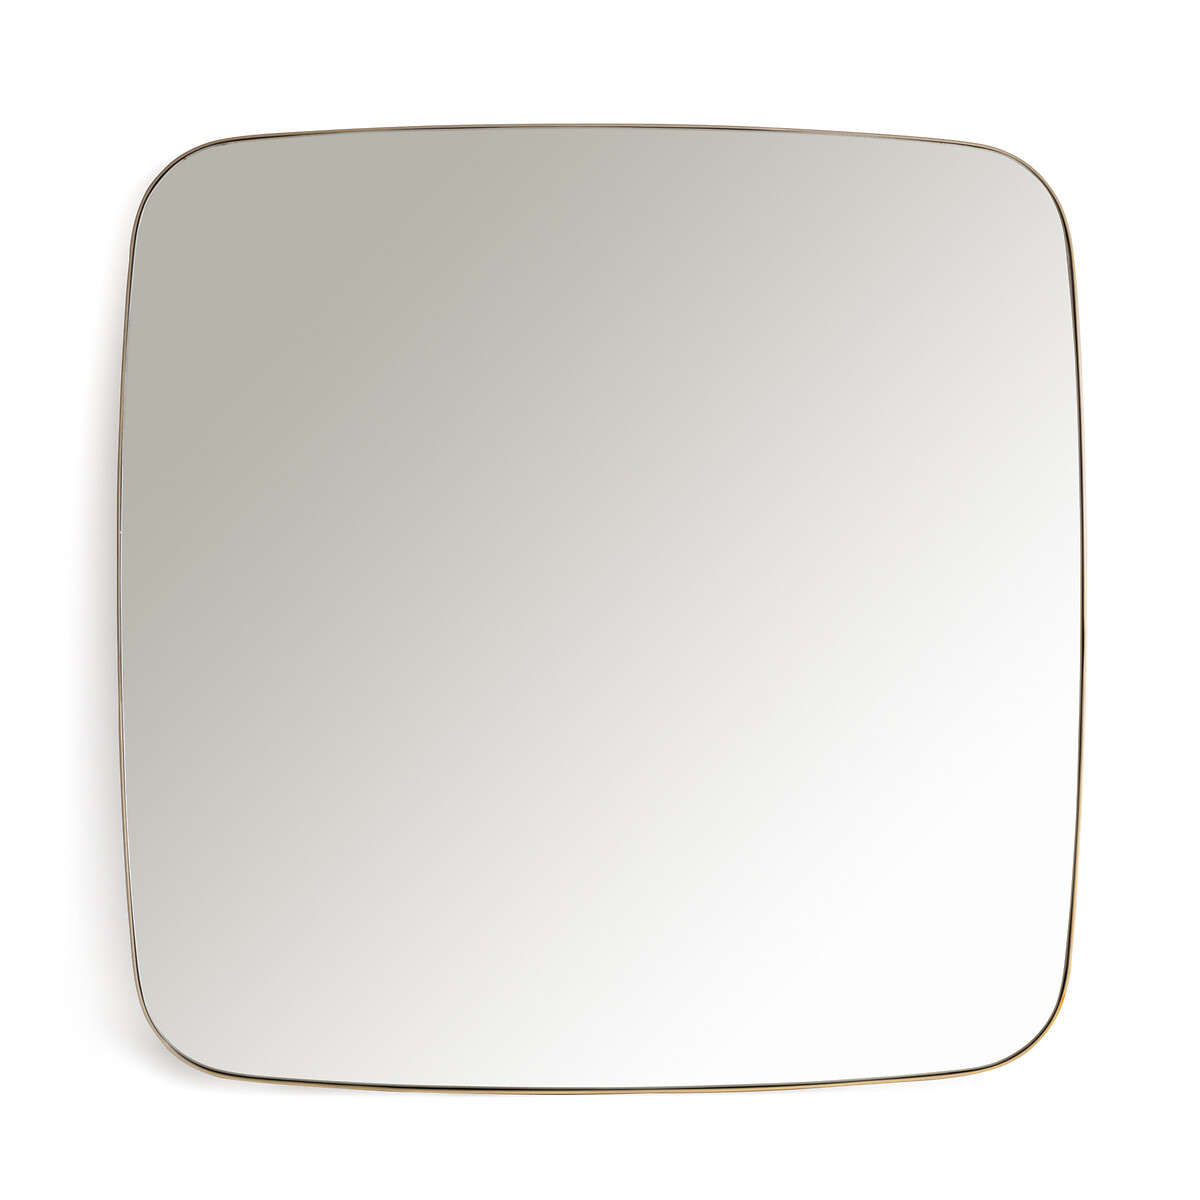 Зеркало квадратное с отделкой металлом В90 см Iodus единый размер желтый зеркало квадратное с отделкой металлом в90 см iodus единый размер желтый